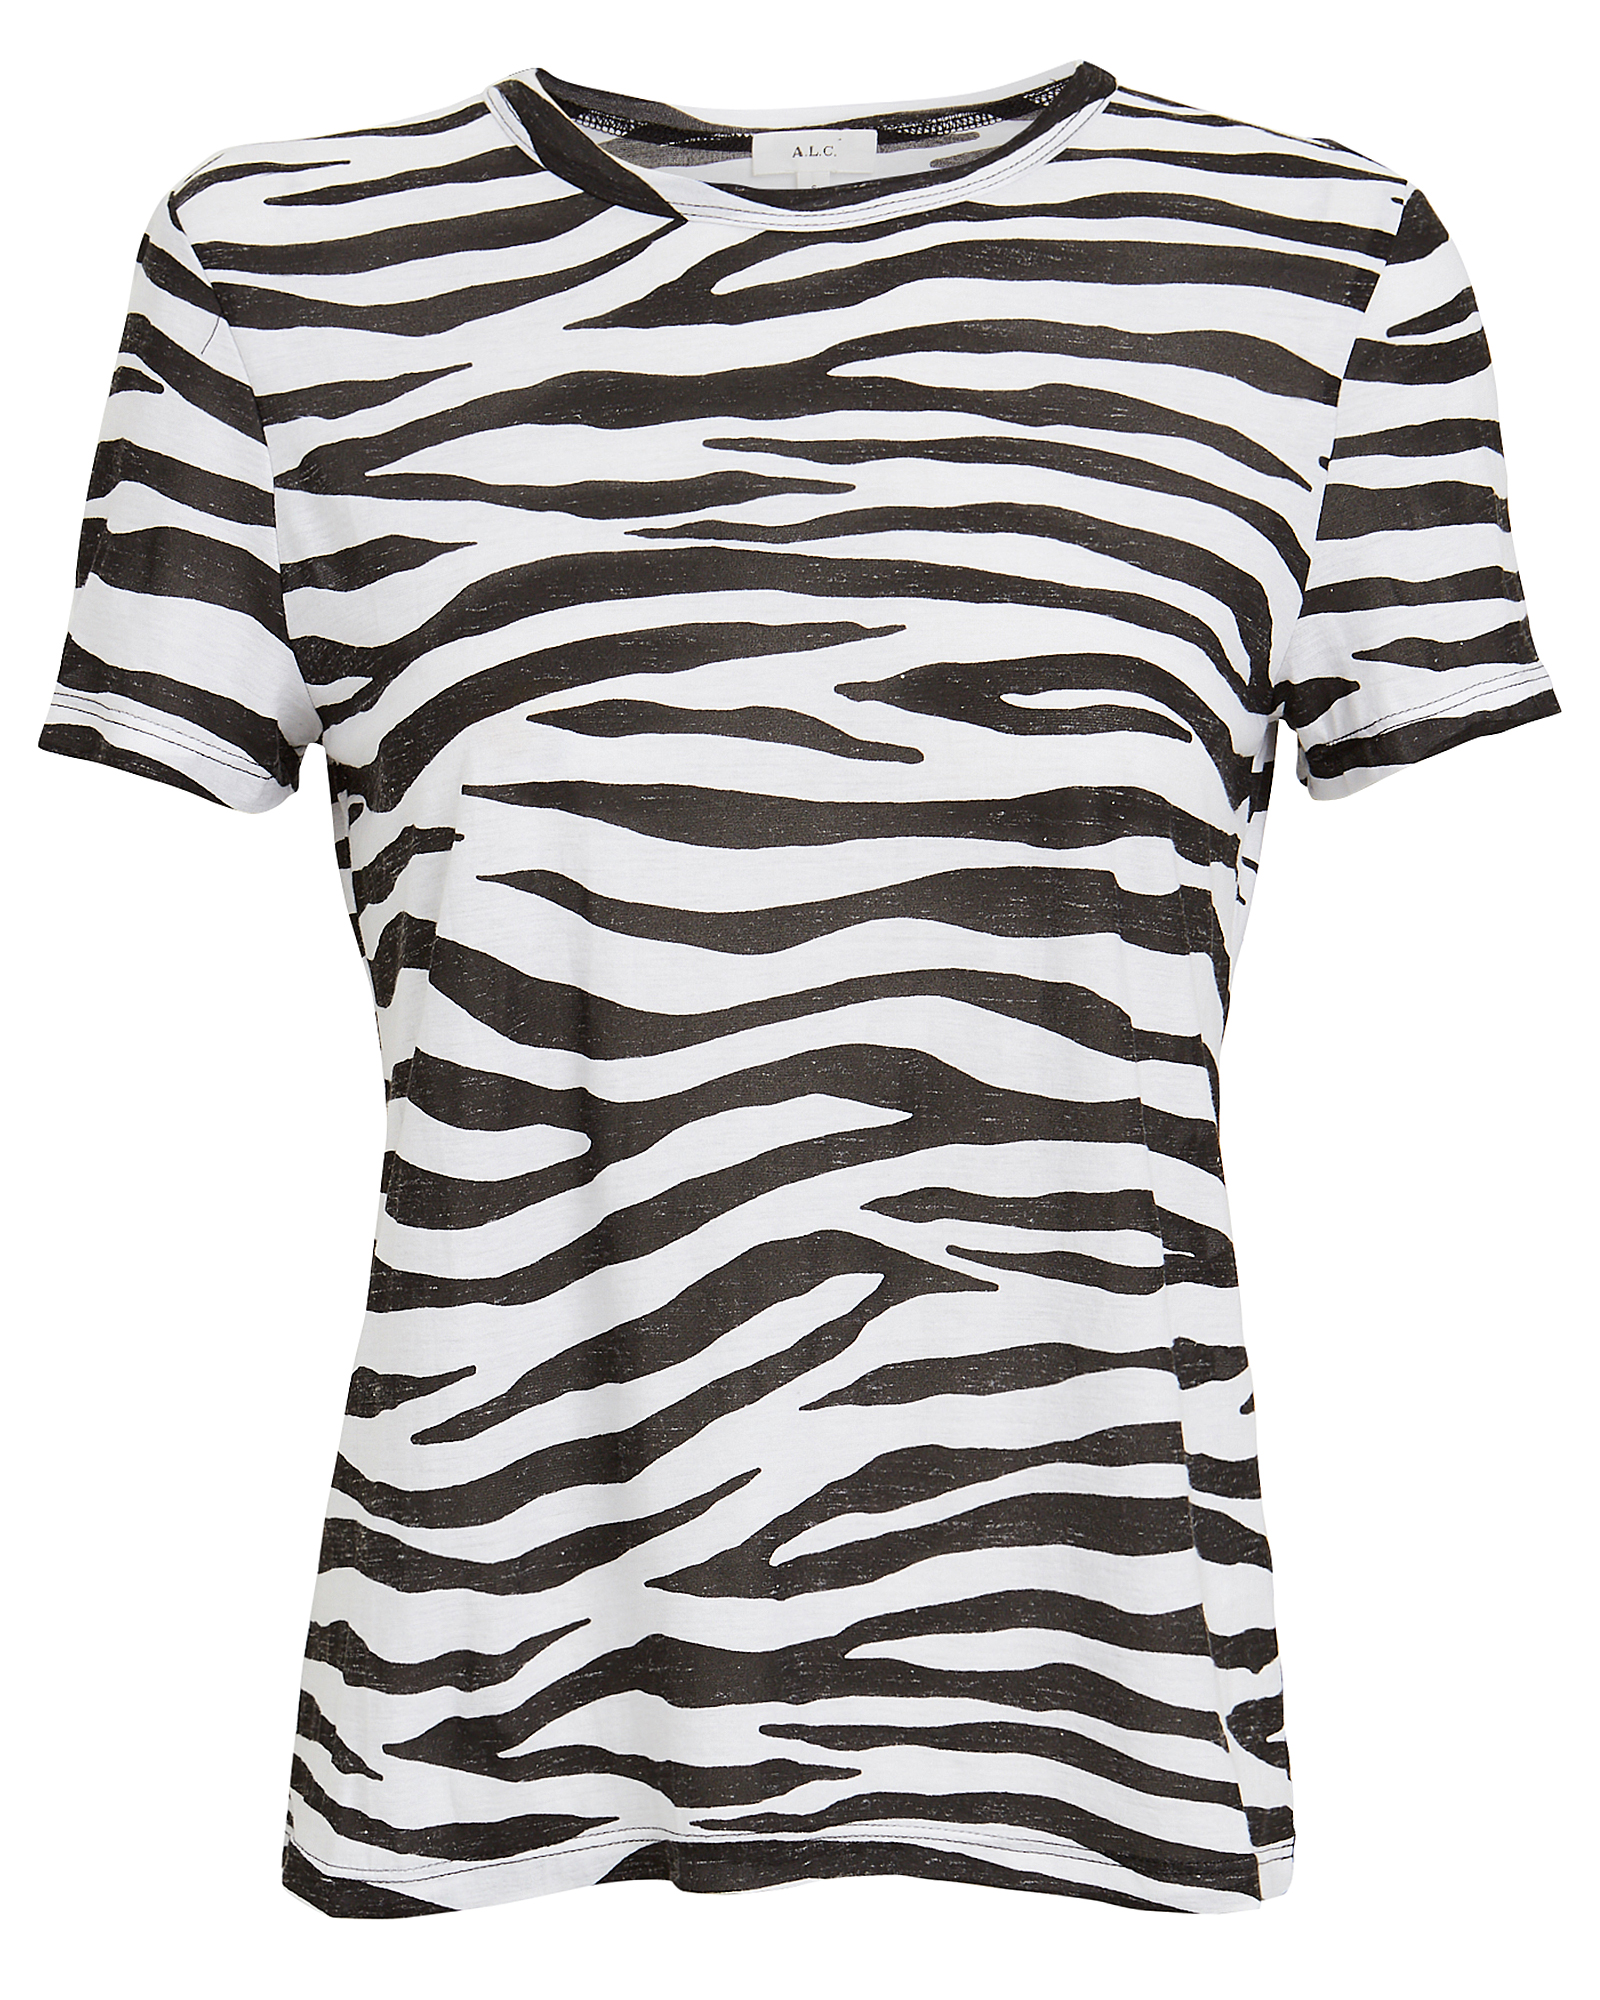 A.l.c . Bambina Zebra Jersey T-shirt In Blk/wht | ModeSens